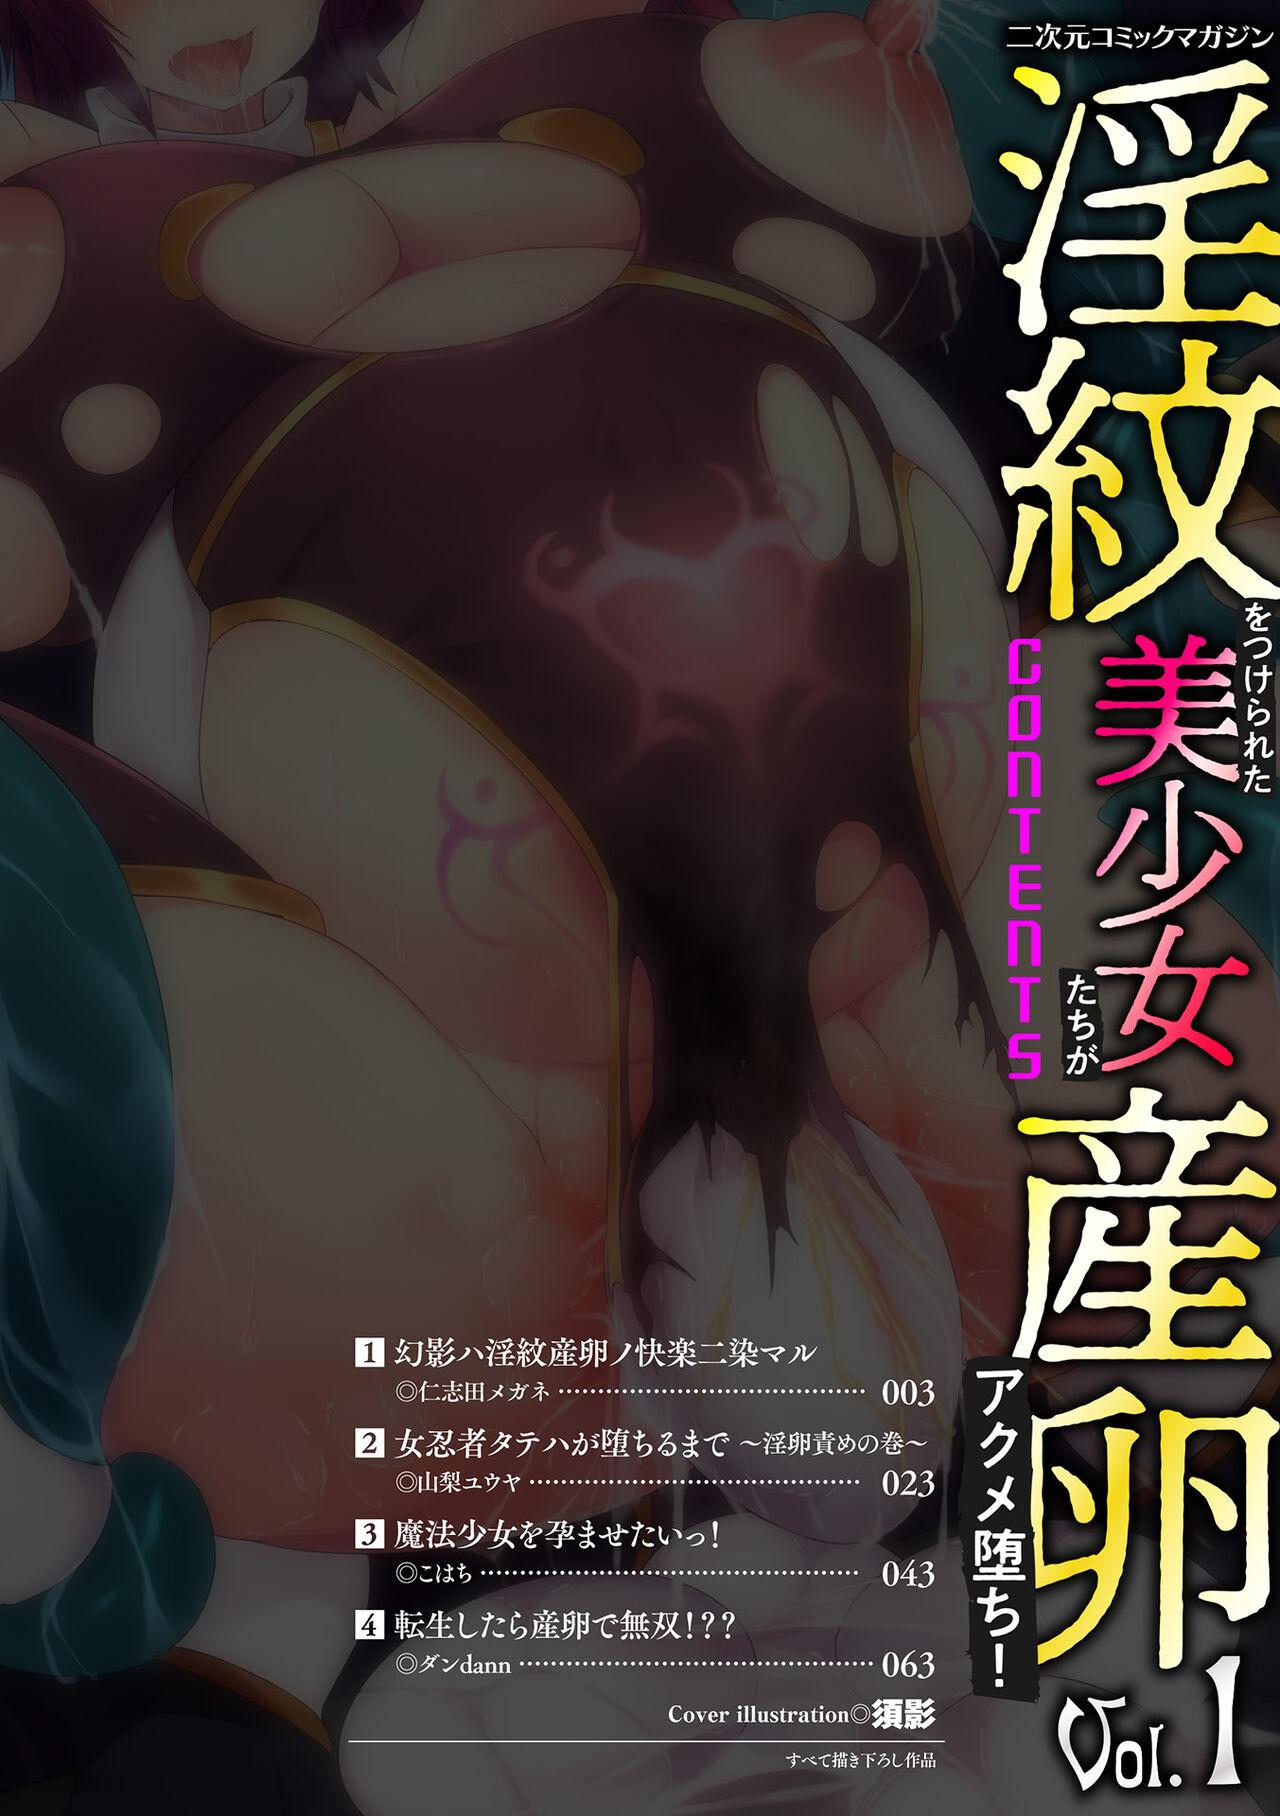 2D Comic Magazine Inmon o Tsukerareta Bishoujo-tachi ga Sanran Acme Ochi! Vol. 1 1